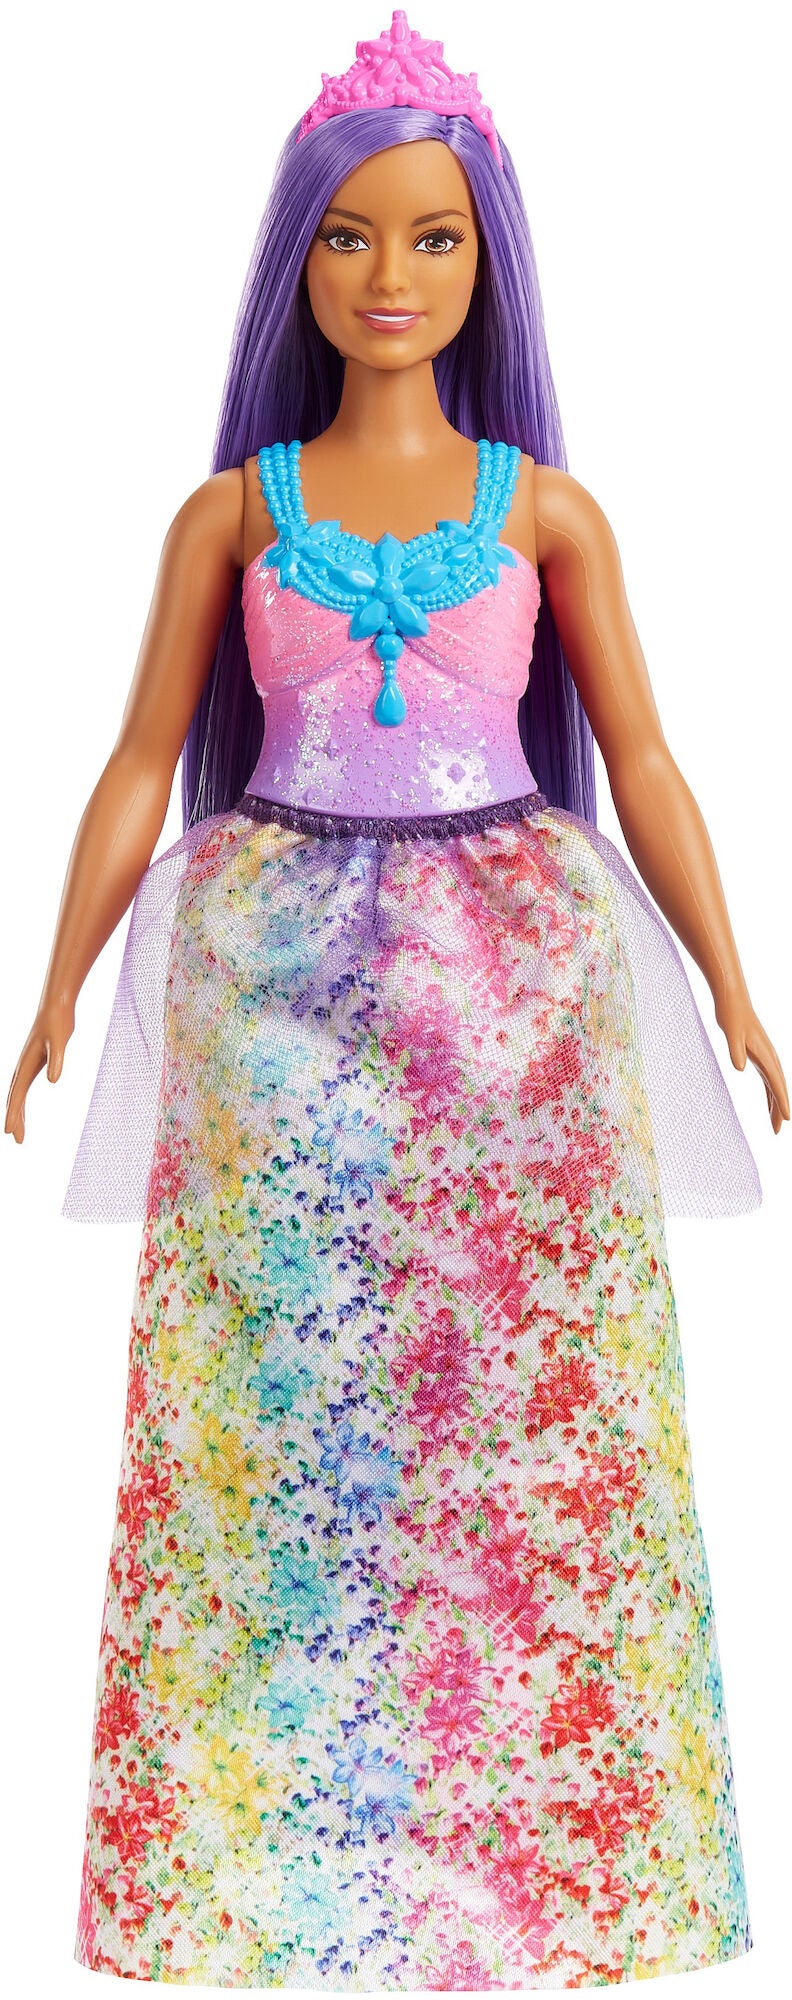 Barbie Dreamtopia Puppe Prinzessin mit lila Haaren von Barbie